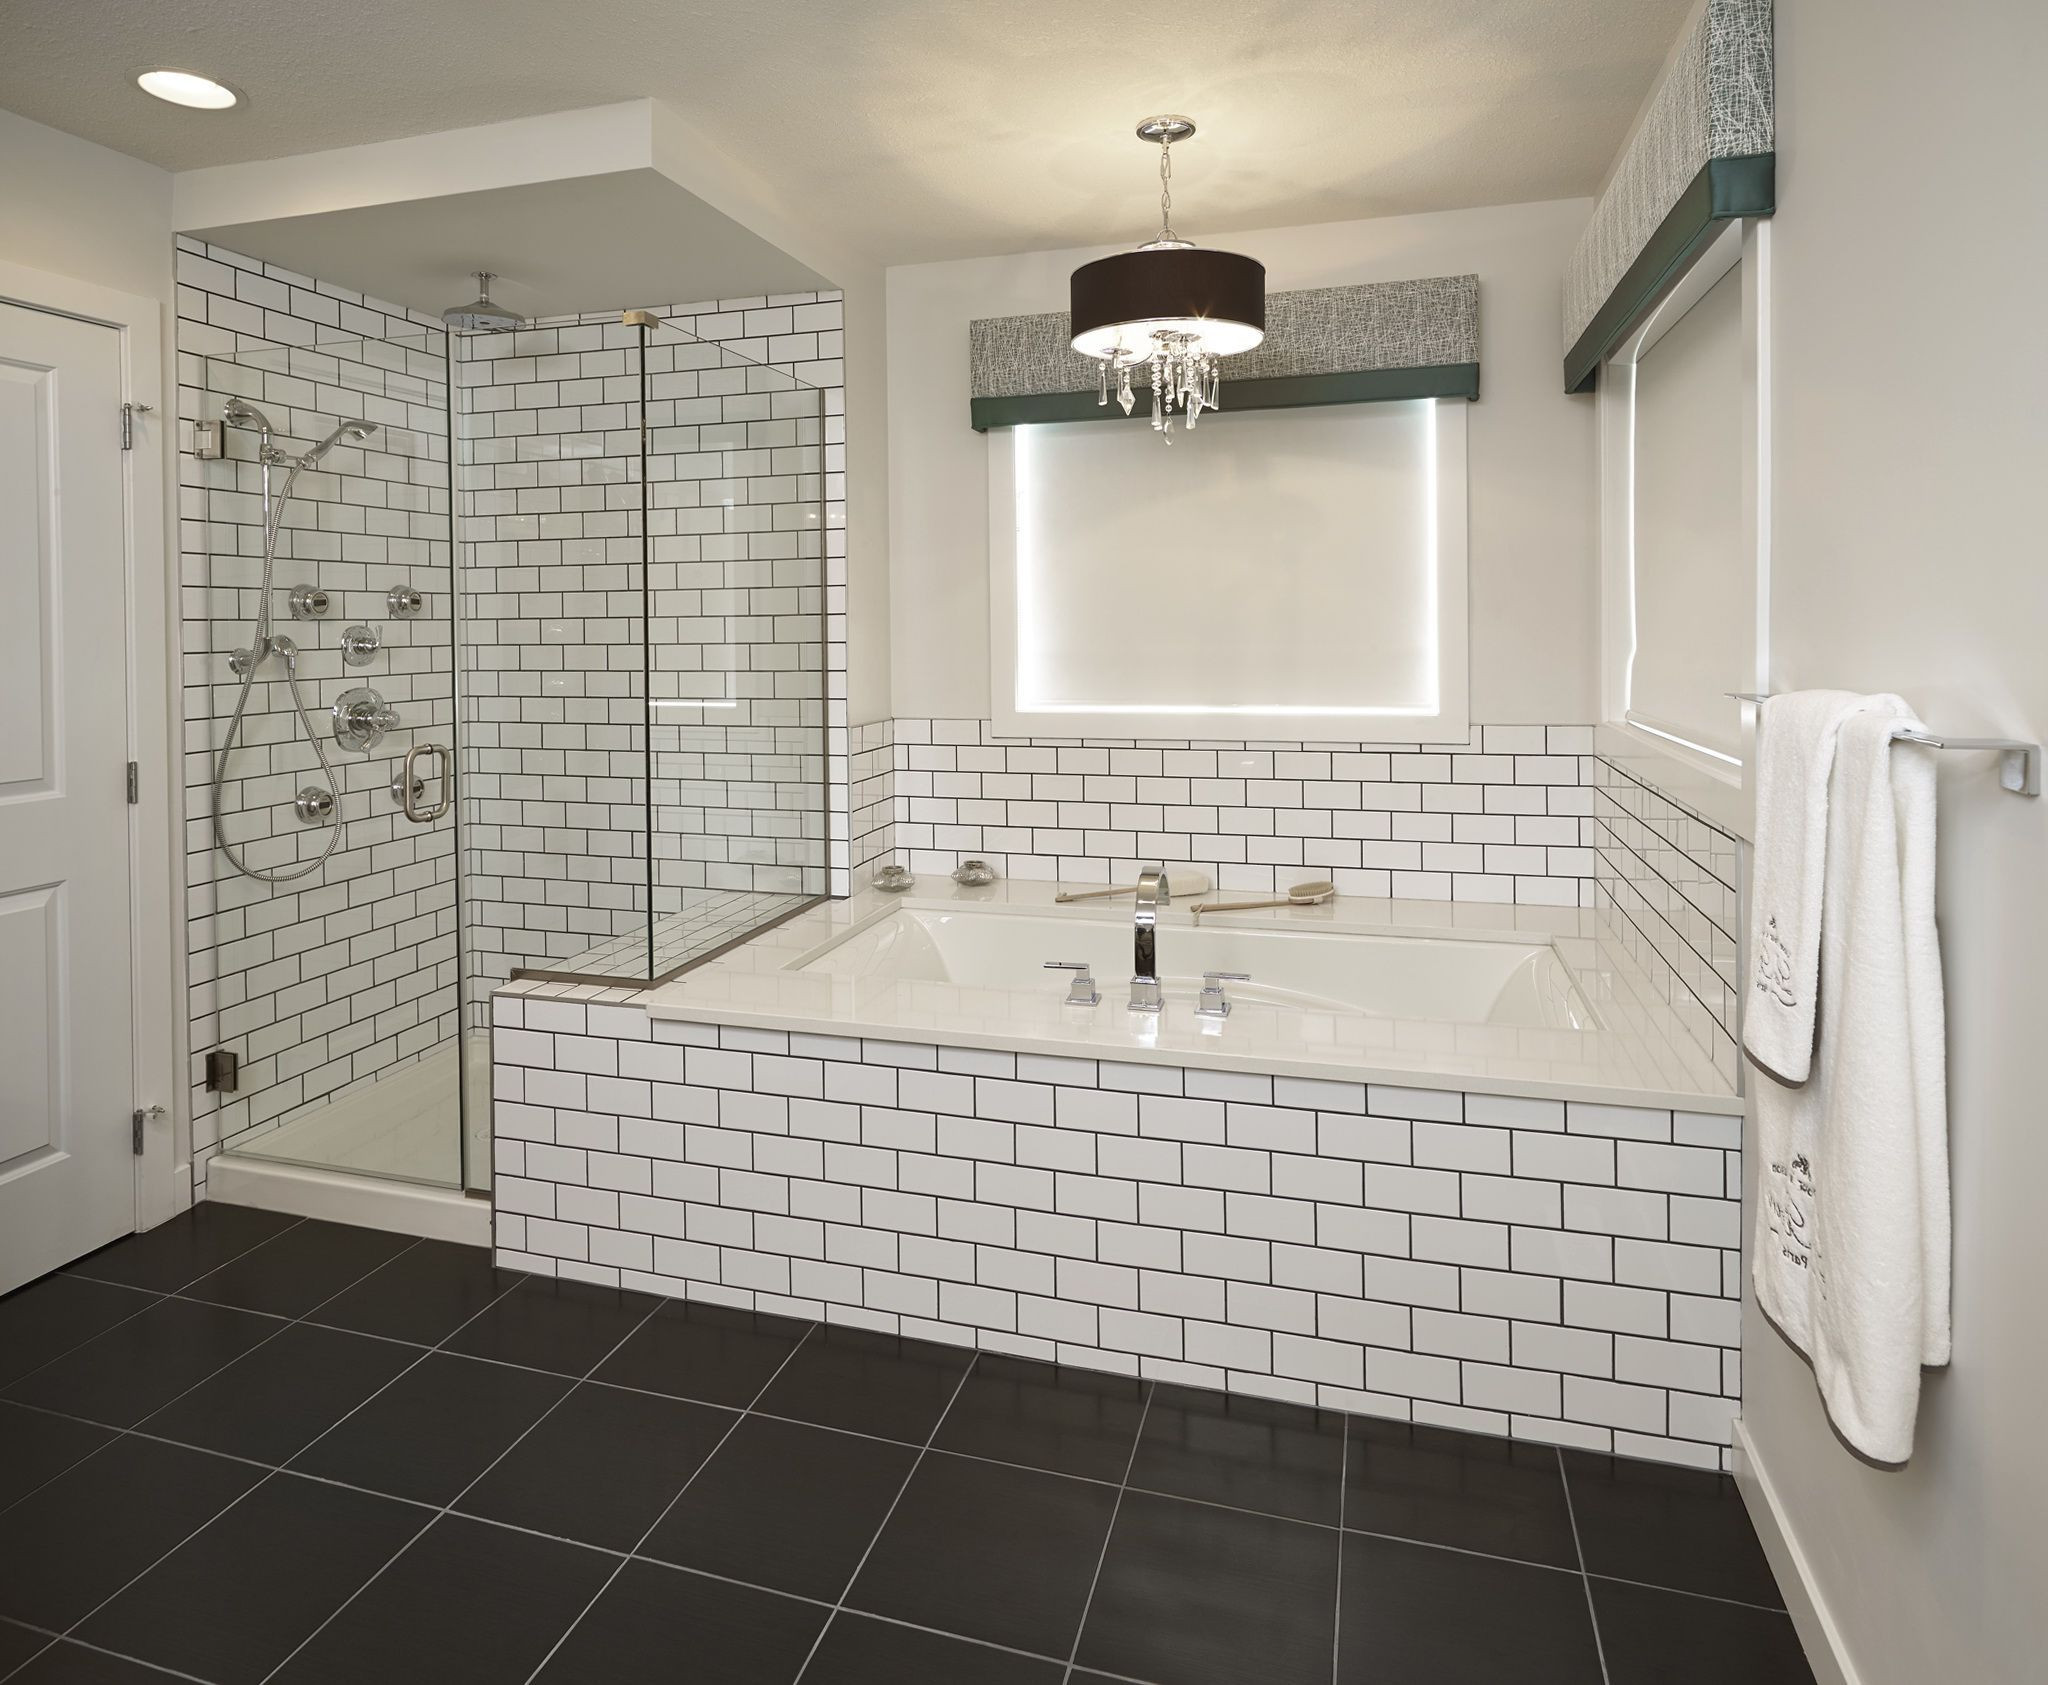 White Tile Bathroom Shower
 Top Tips on Choosing the Shower Tiles for Your Bathroom